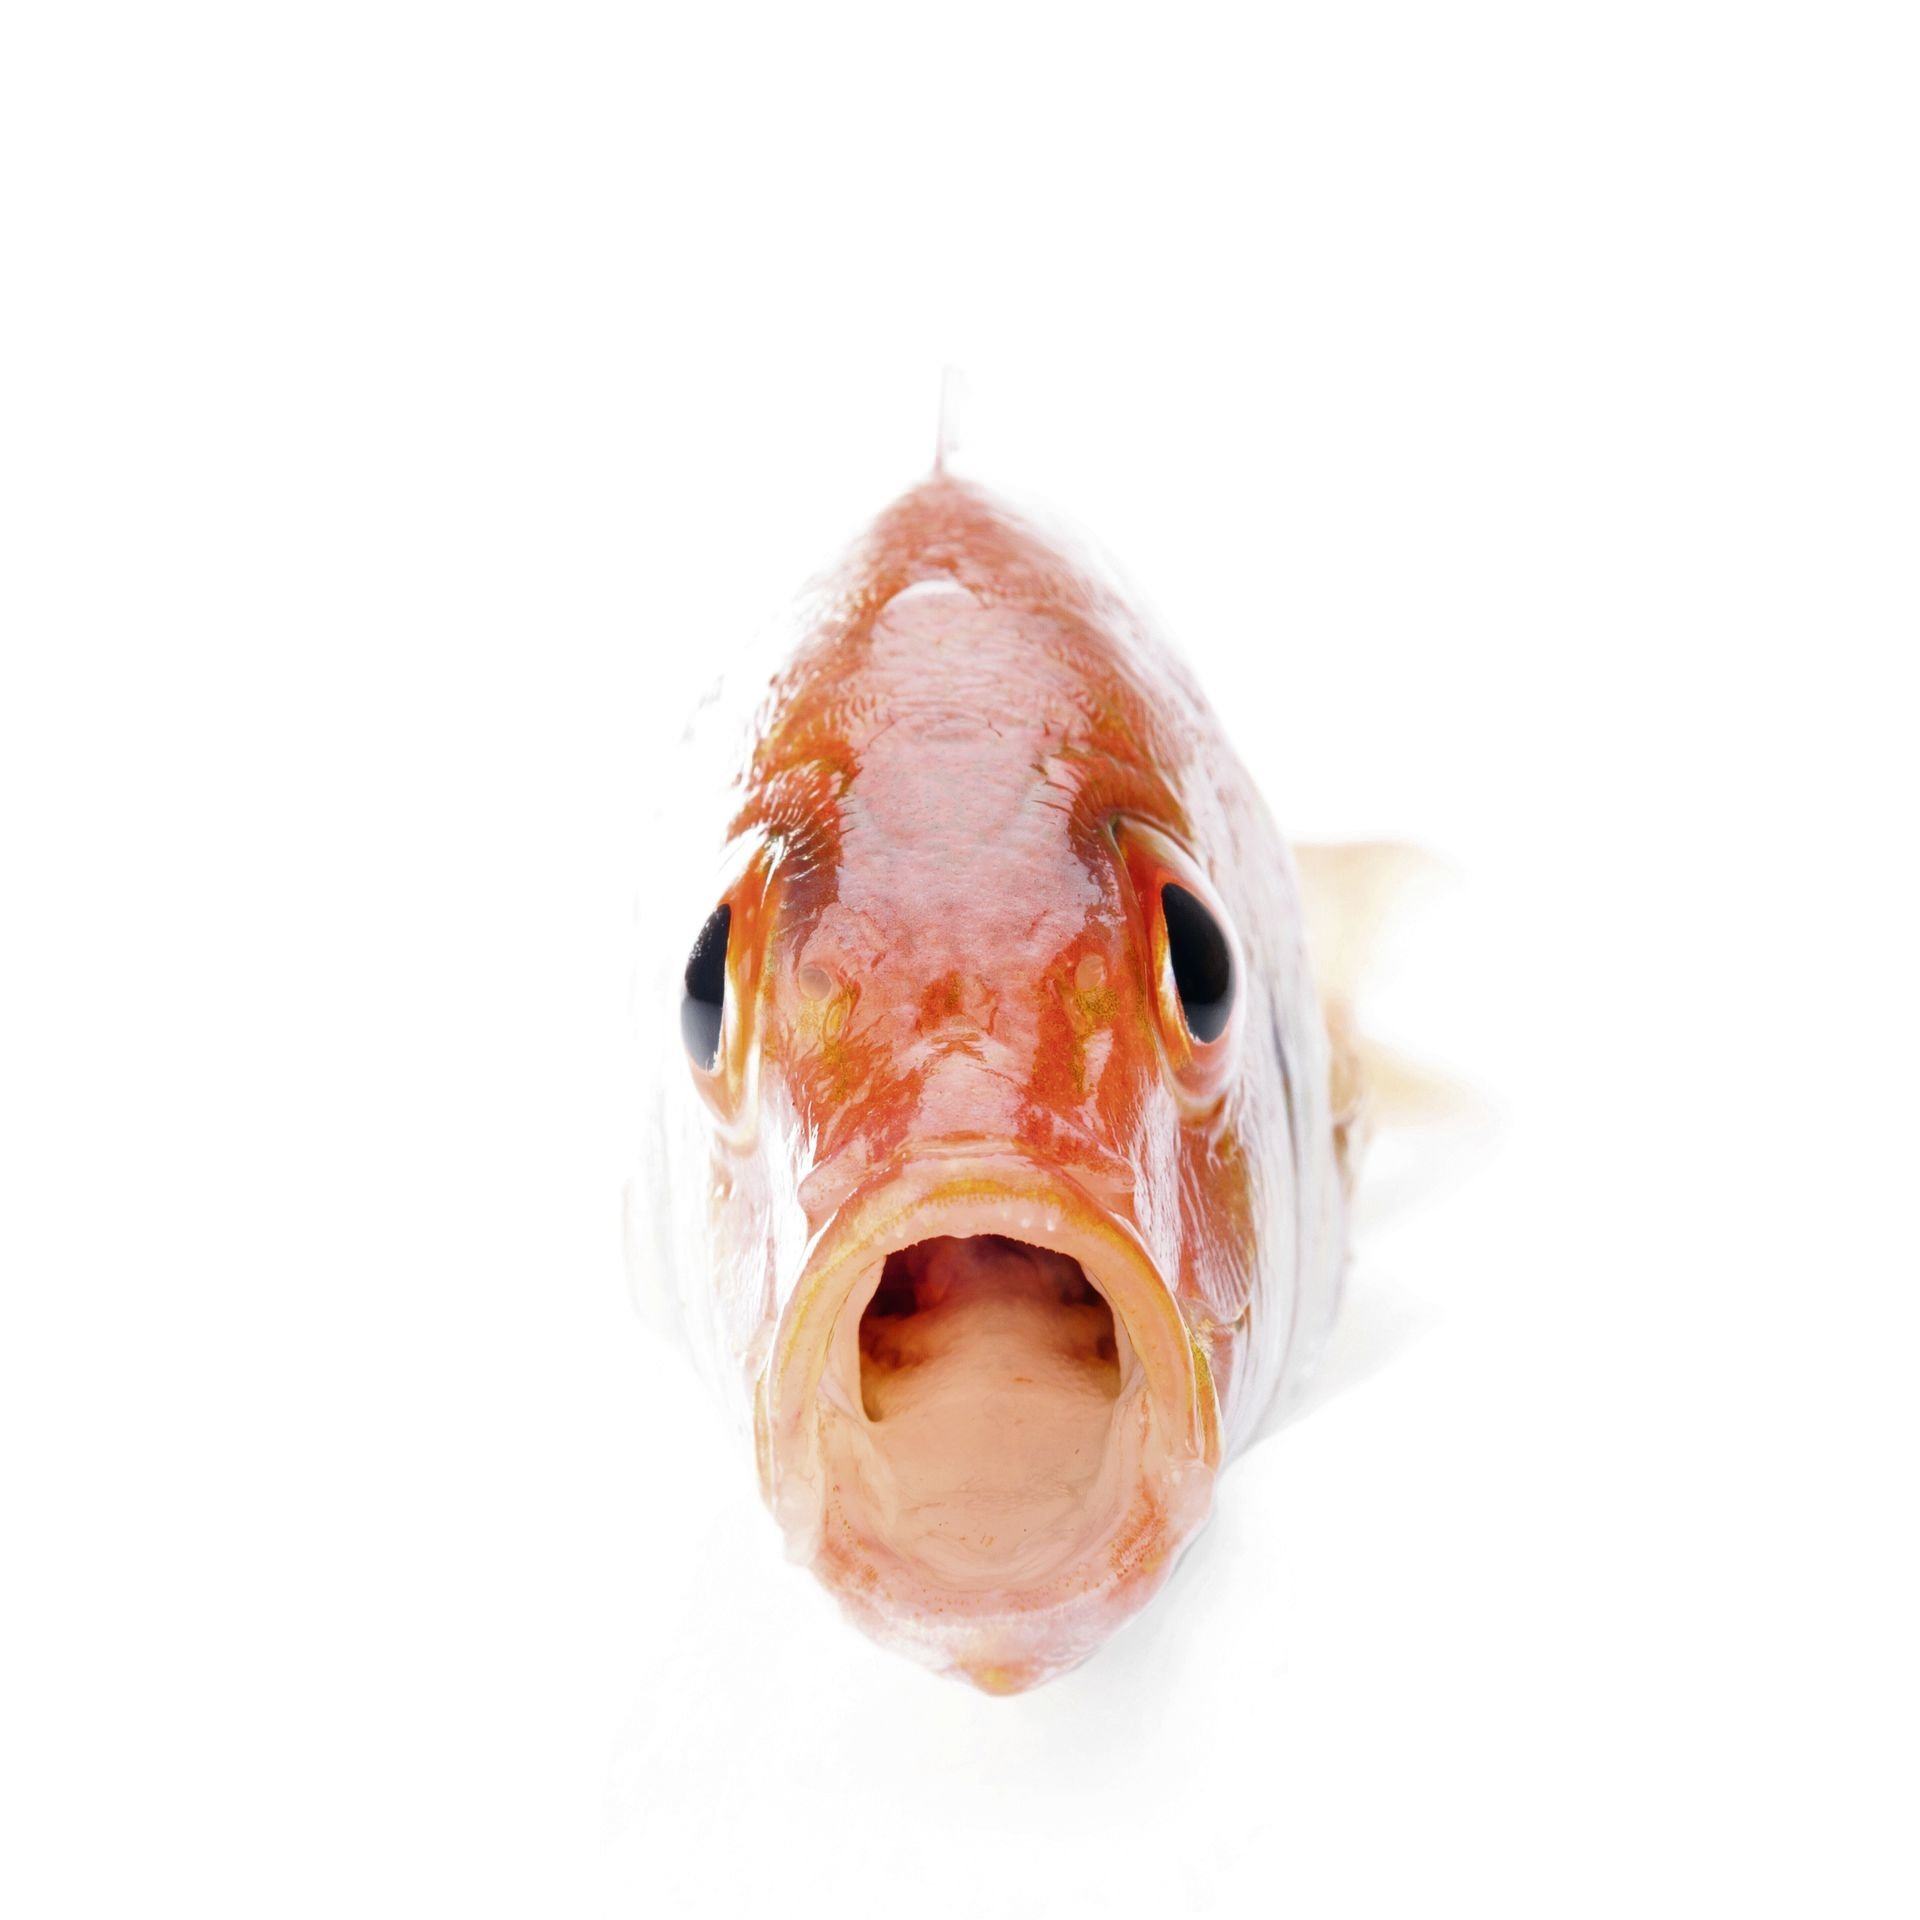 Рыбка открывает рот. Рыба с открытым ртом. Рыба анфас с открытым ртом. Рыба в анфас. Окунь с открытым ртом.